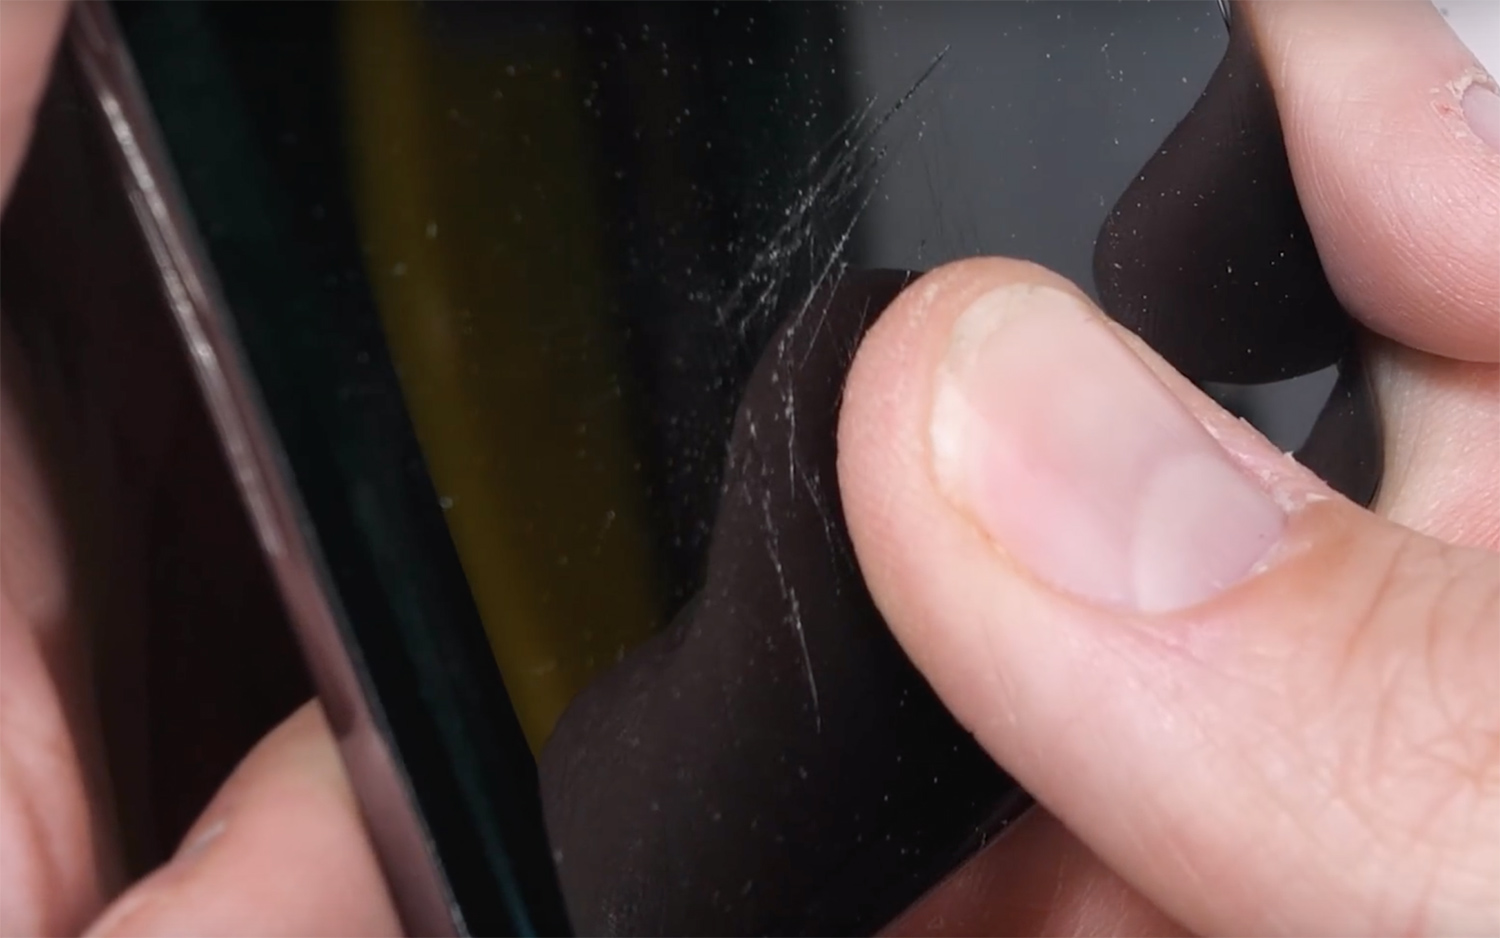 Leitor de digitais do Galaxy S10 aguenta arranhões, mas não rachaduras na tela